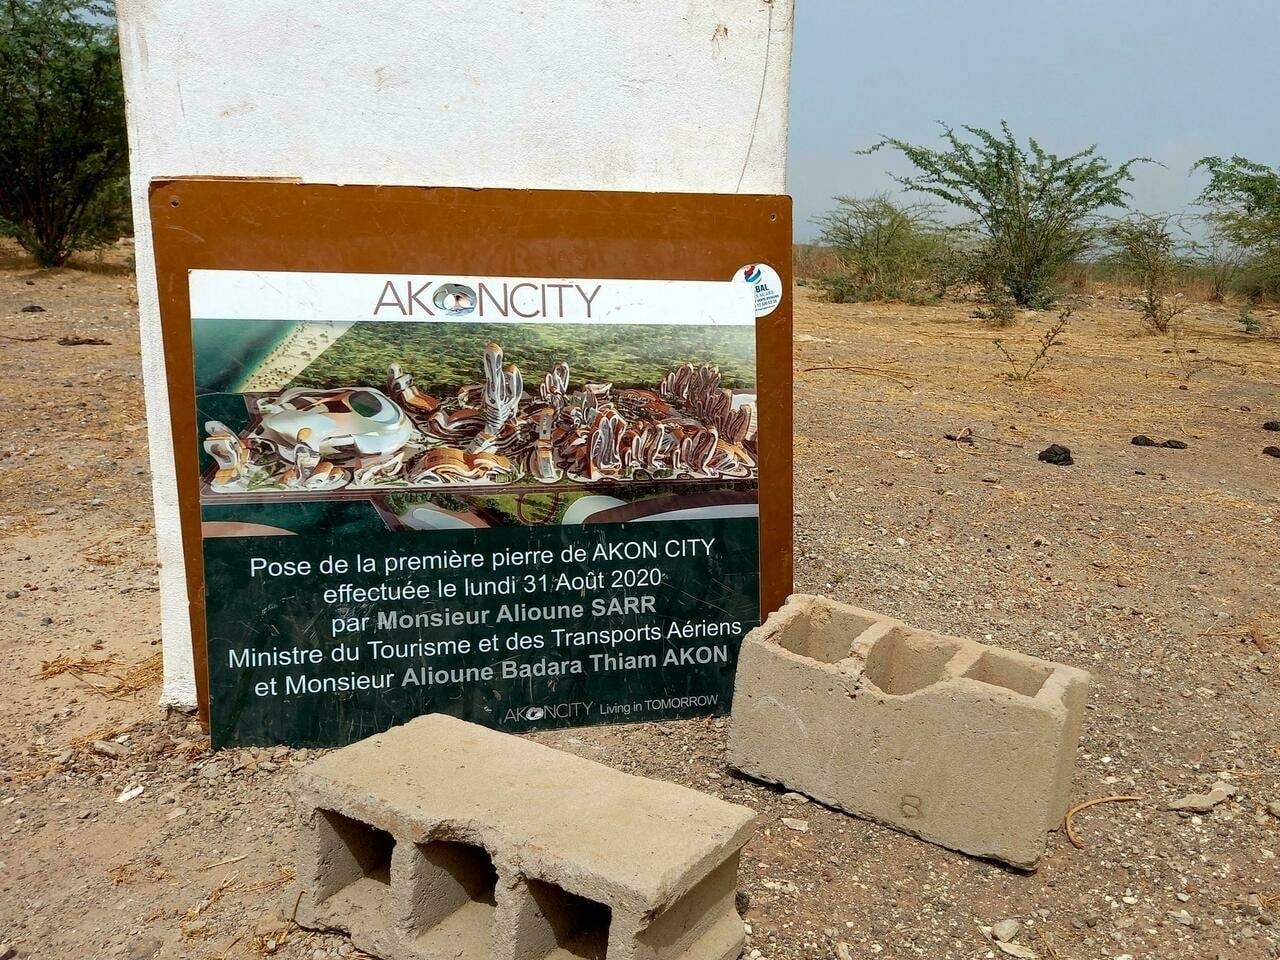 Première pierre du chantier Akon City posée en 2020 à Mbodiene au Sénégal